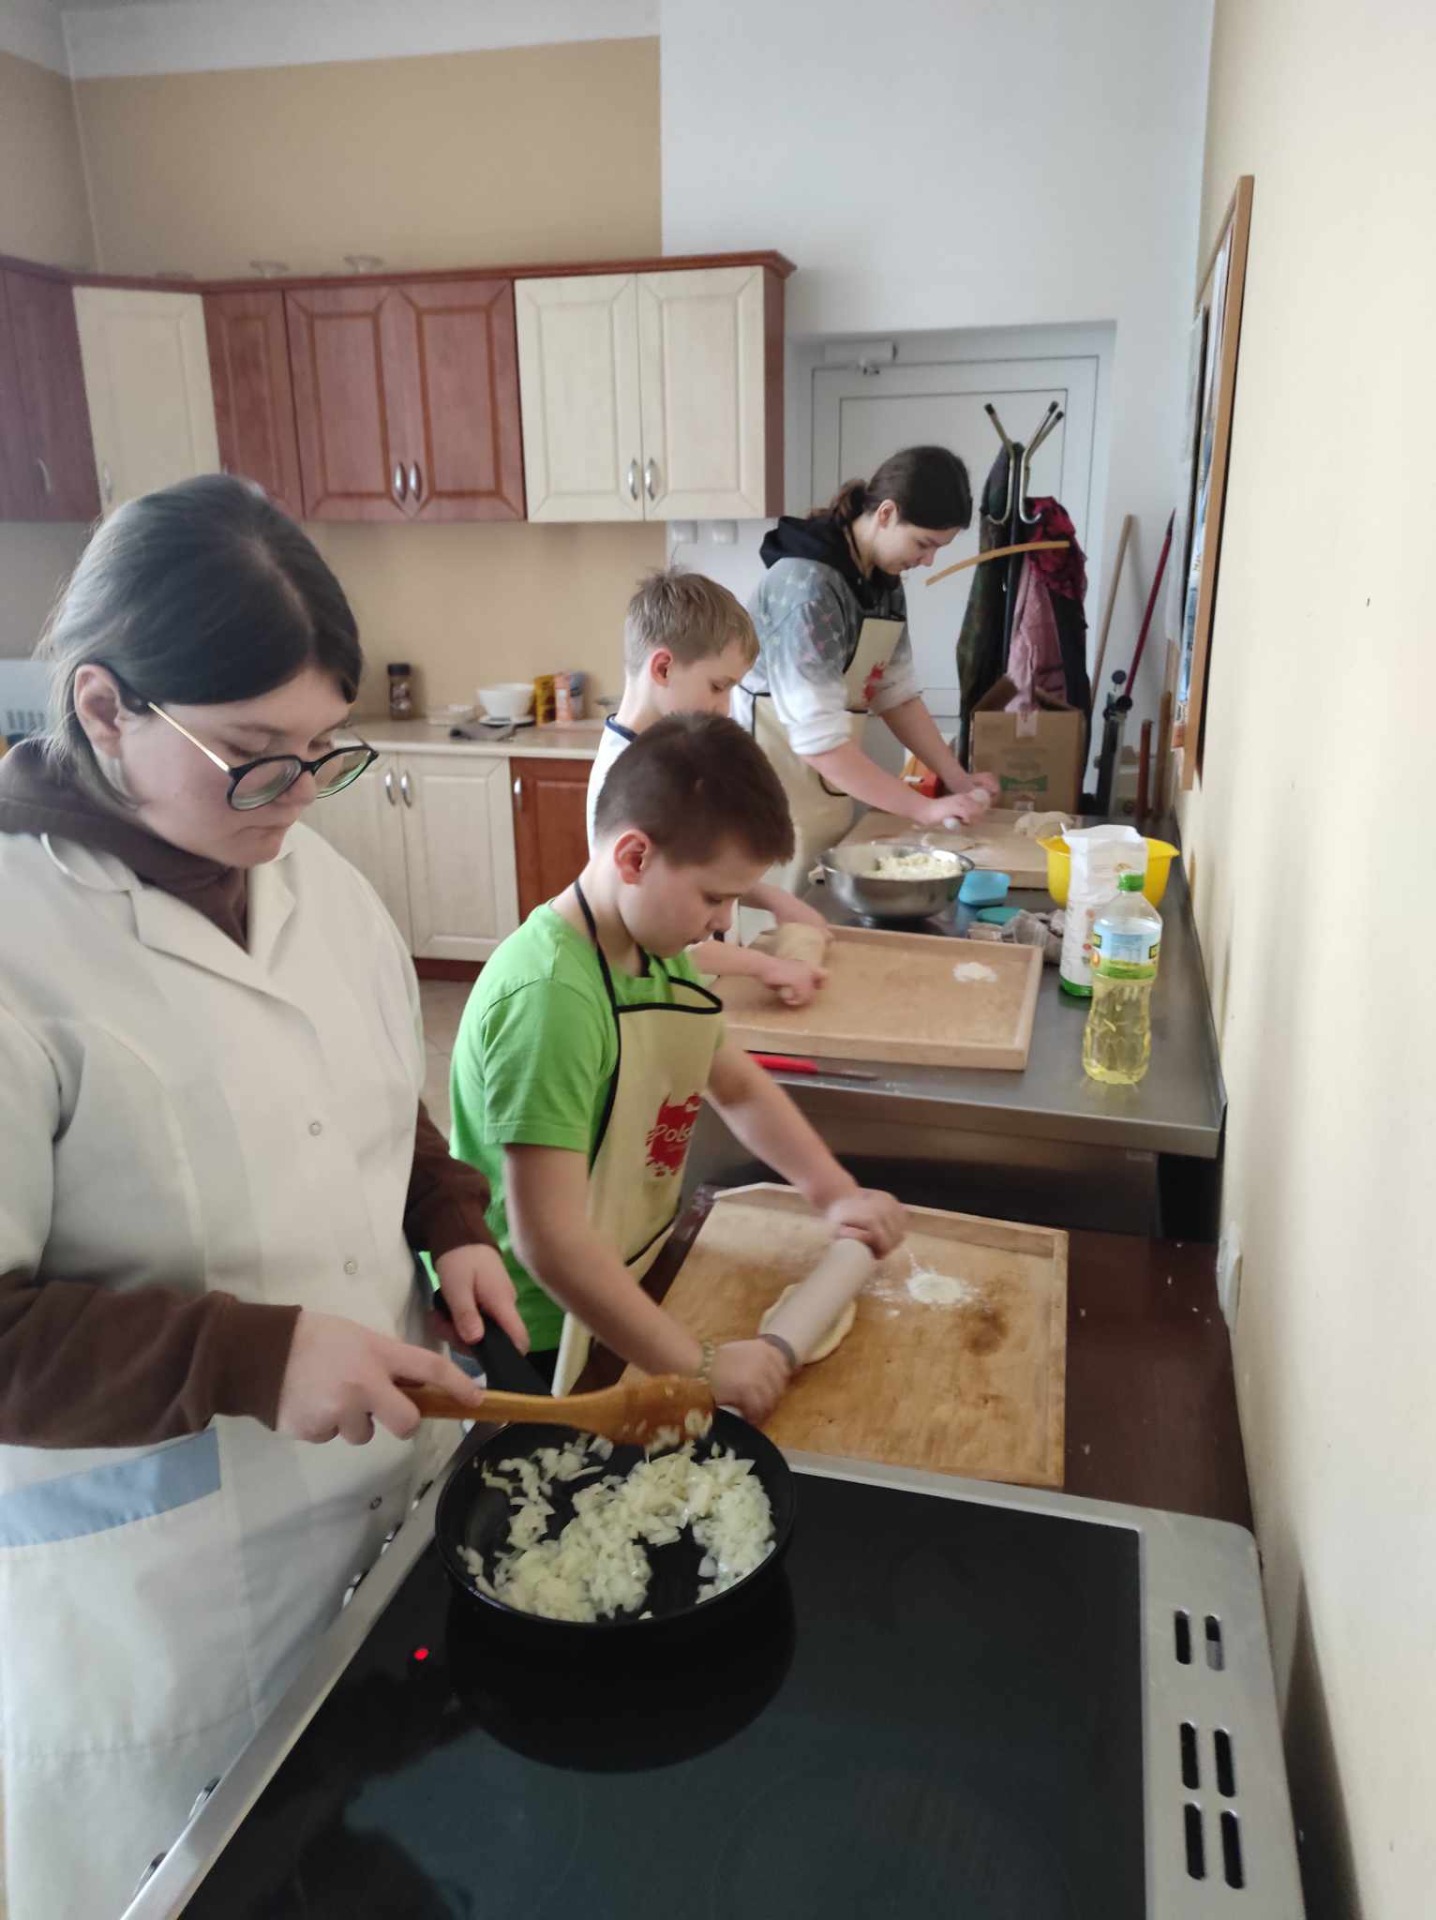 Wychowankowie przygotowują składniki na farsz, dziewczynka smazy cebulę, chłopiec wałkuje ciasto , pozostali mieszają inne składniki